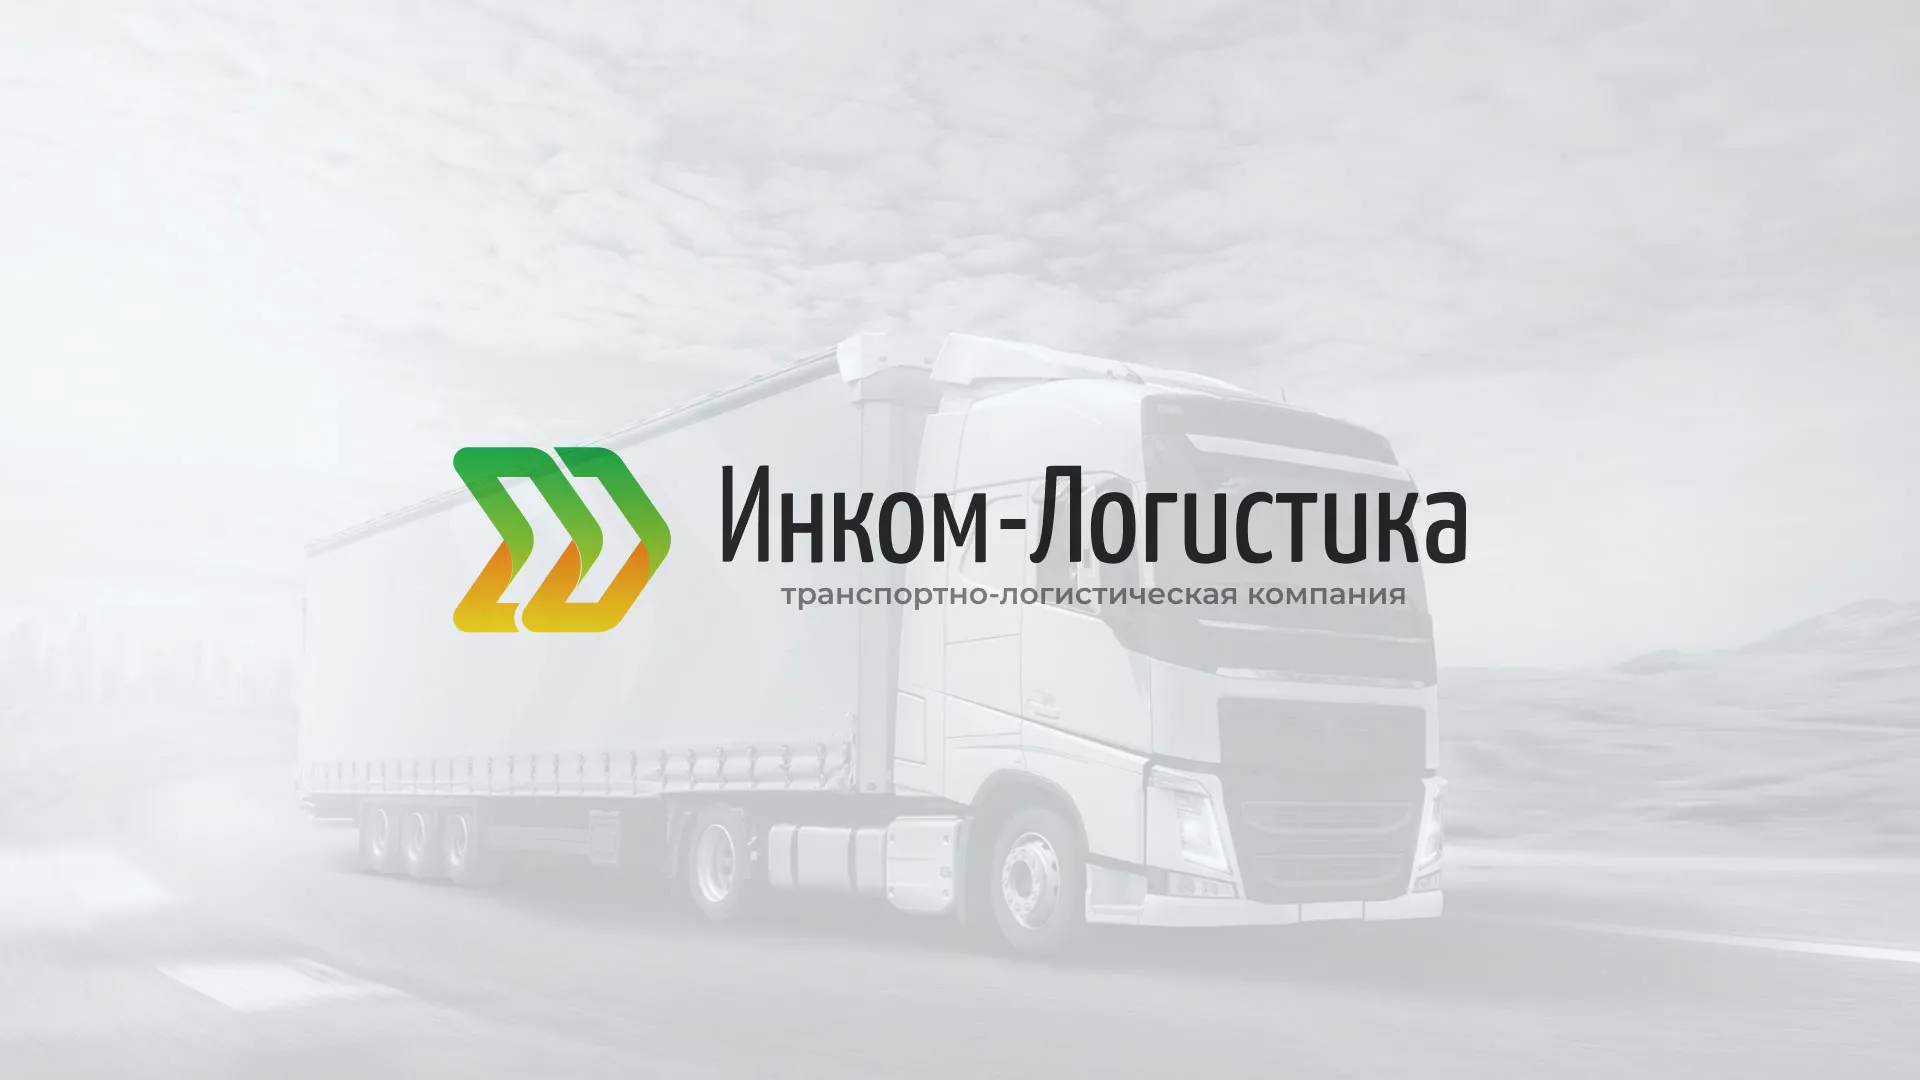 Разработка логотипа и сайта компании «Инком-Логистика» в Пудоже